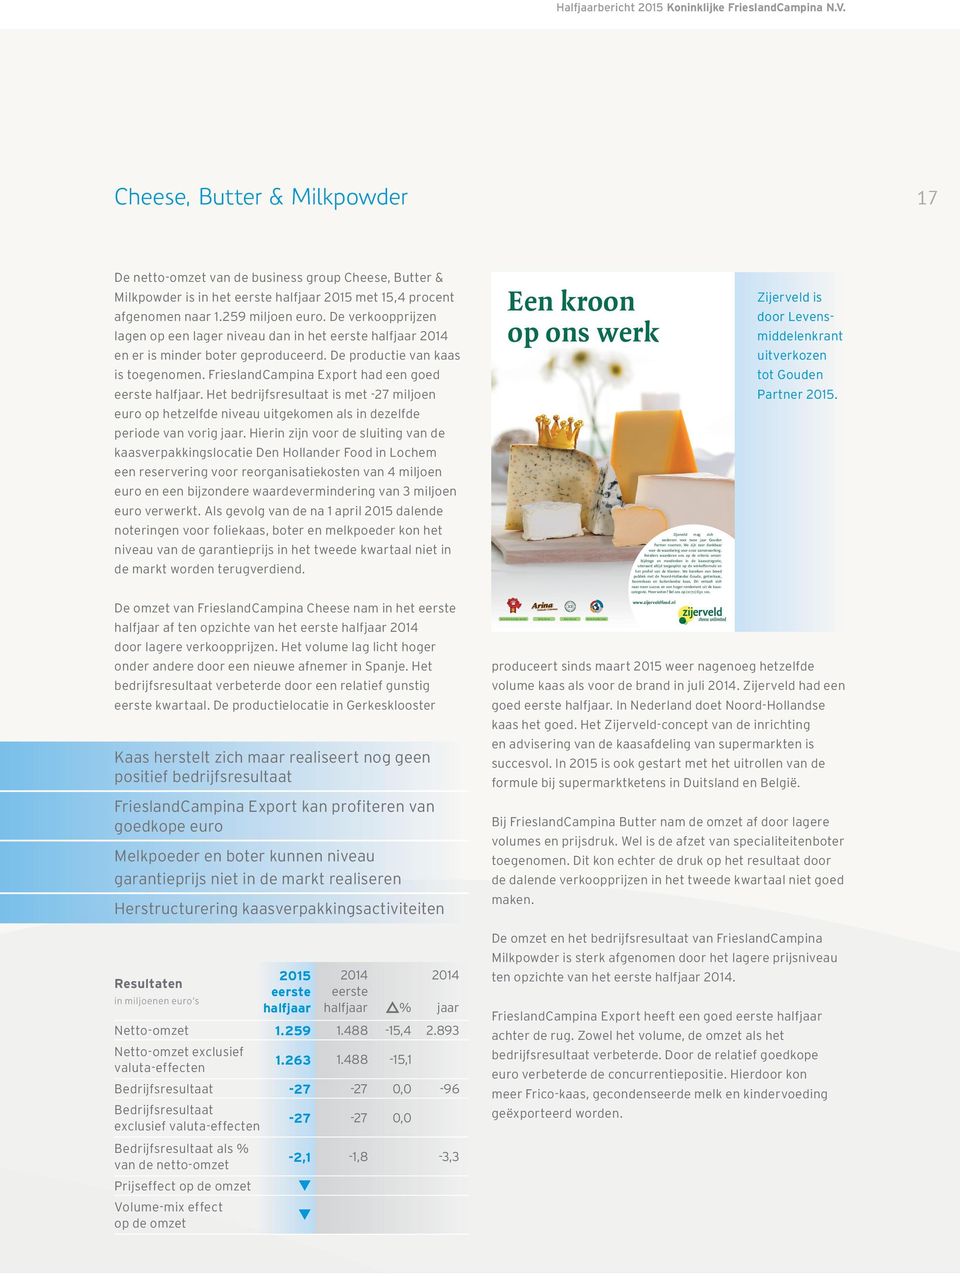 Cheese, Butter & Milkpowder 17 De netto-omzet van de business group Cheese, Butter & Milkpowder is in het eerste halfjaar 2015 met 15,4 procent afgenomen naar 1.259 miljoen euro.